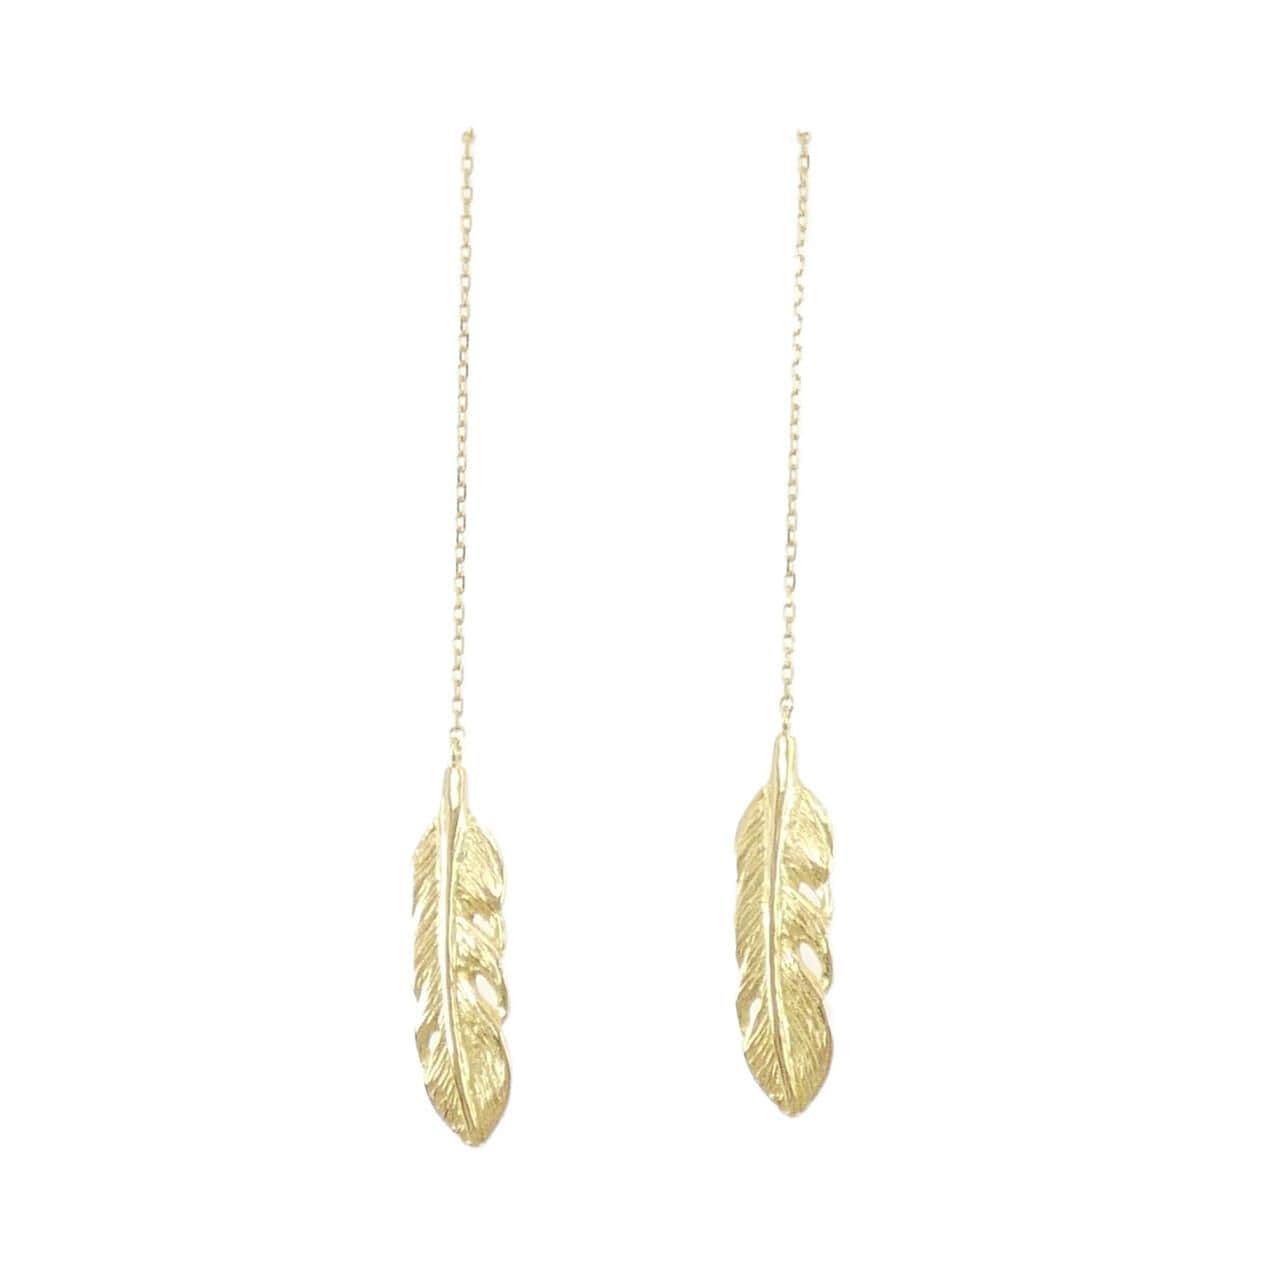 K18YG feather earrings